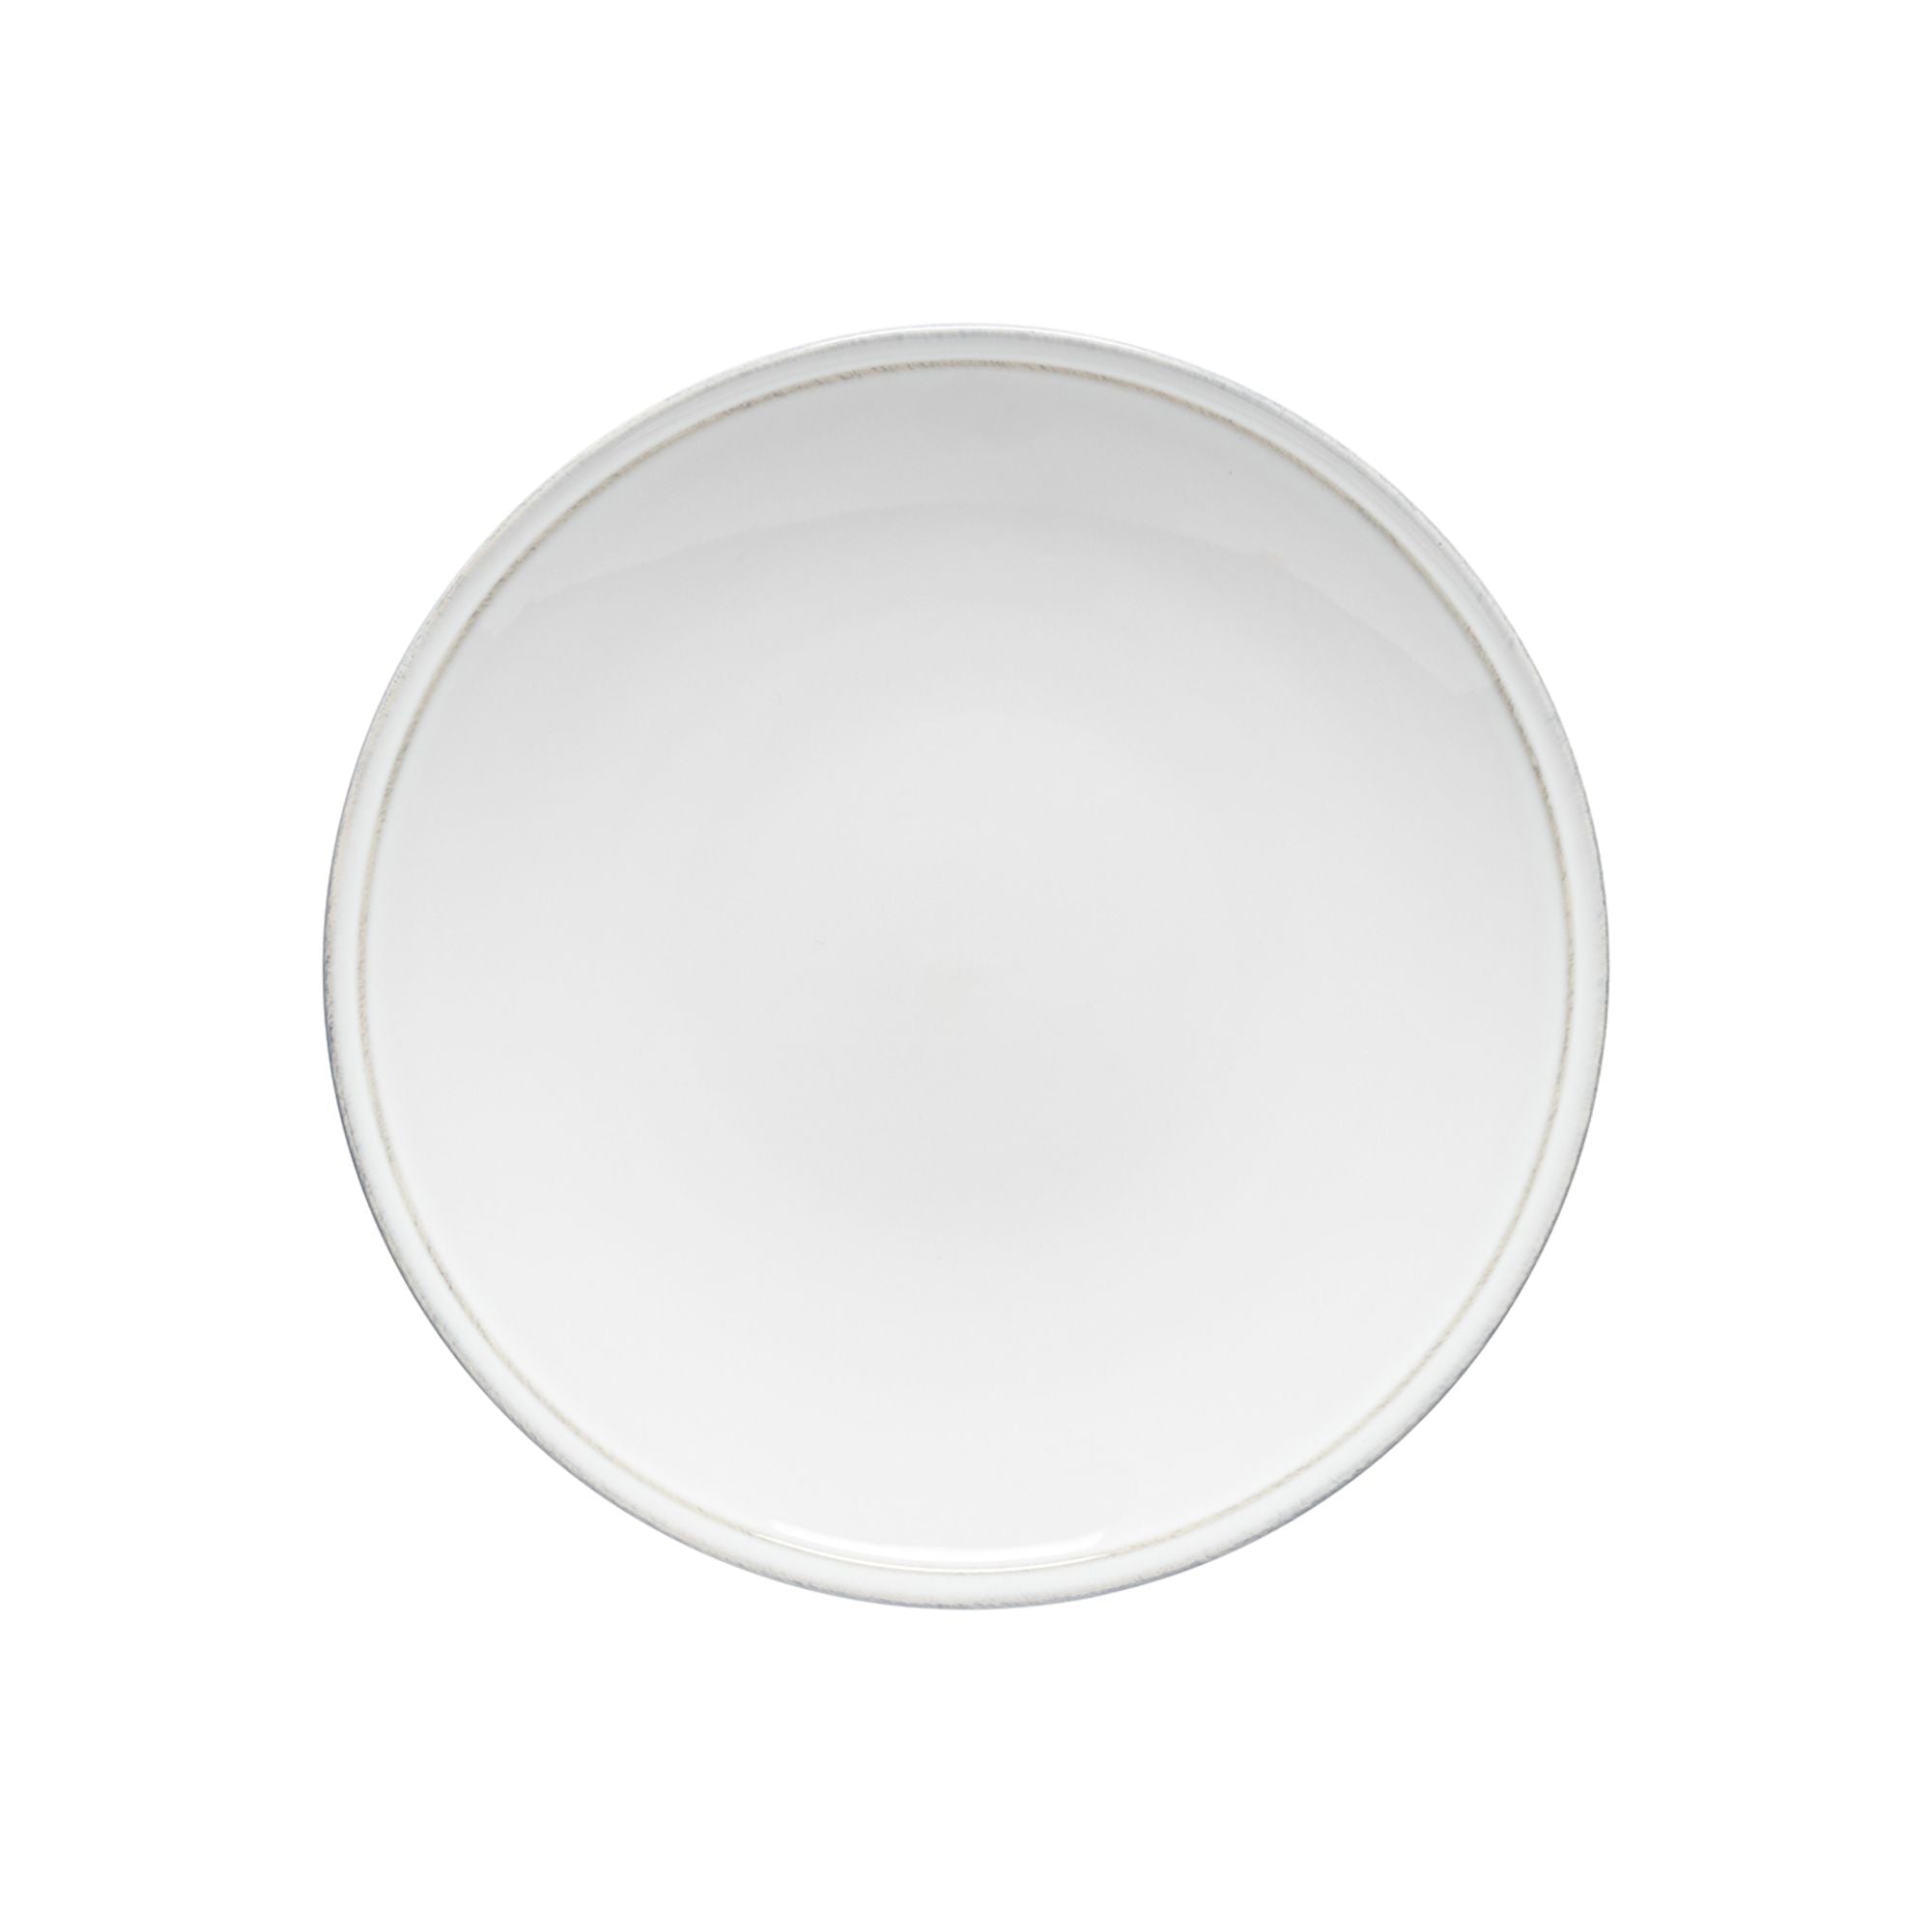 Friso Dinner Plate 11" White